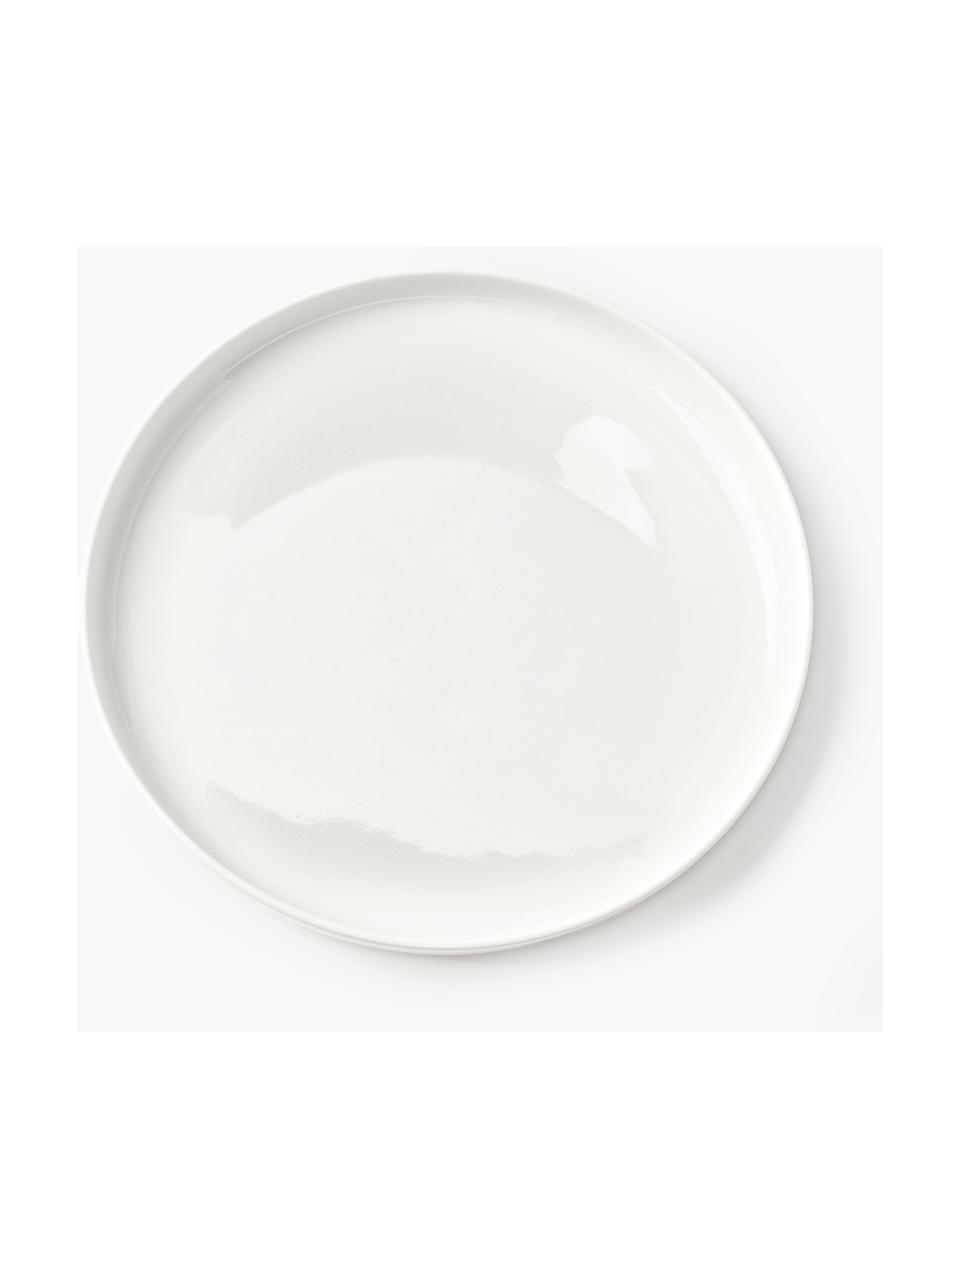 Servizio di piatti in porcellana Nessa, 4 persone (12 pz), Porcellana a pasta dura di alta qualità smaltata, Bianco latte lucido, 4 persone (12 pz)